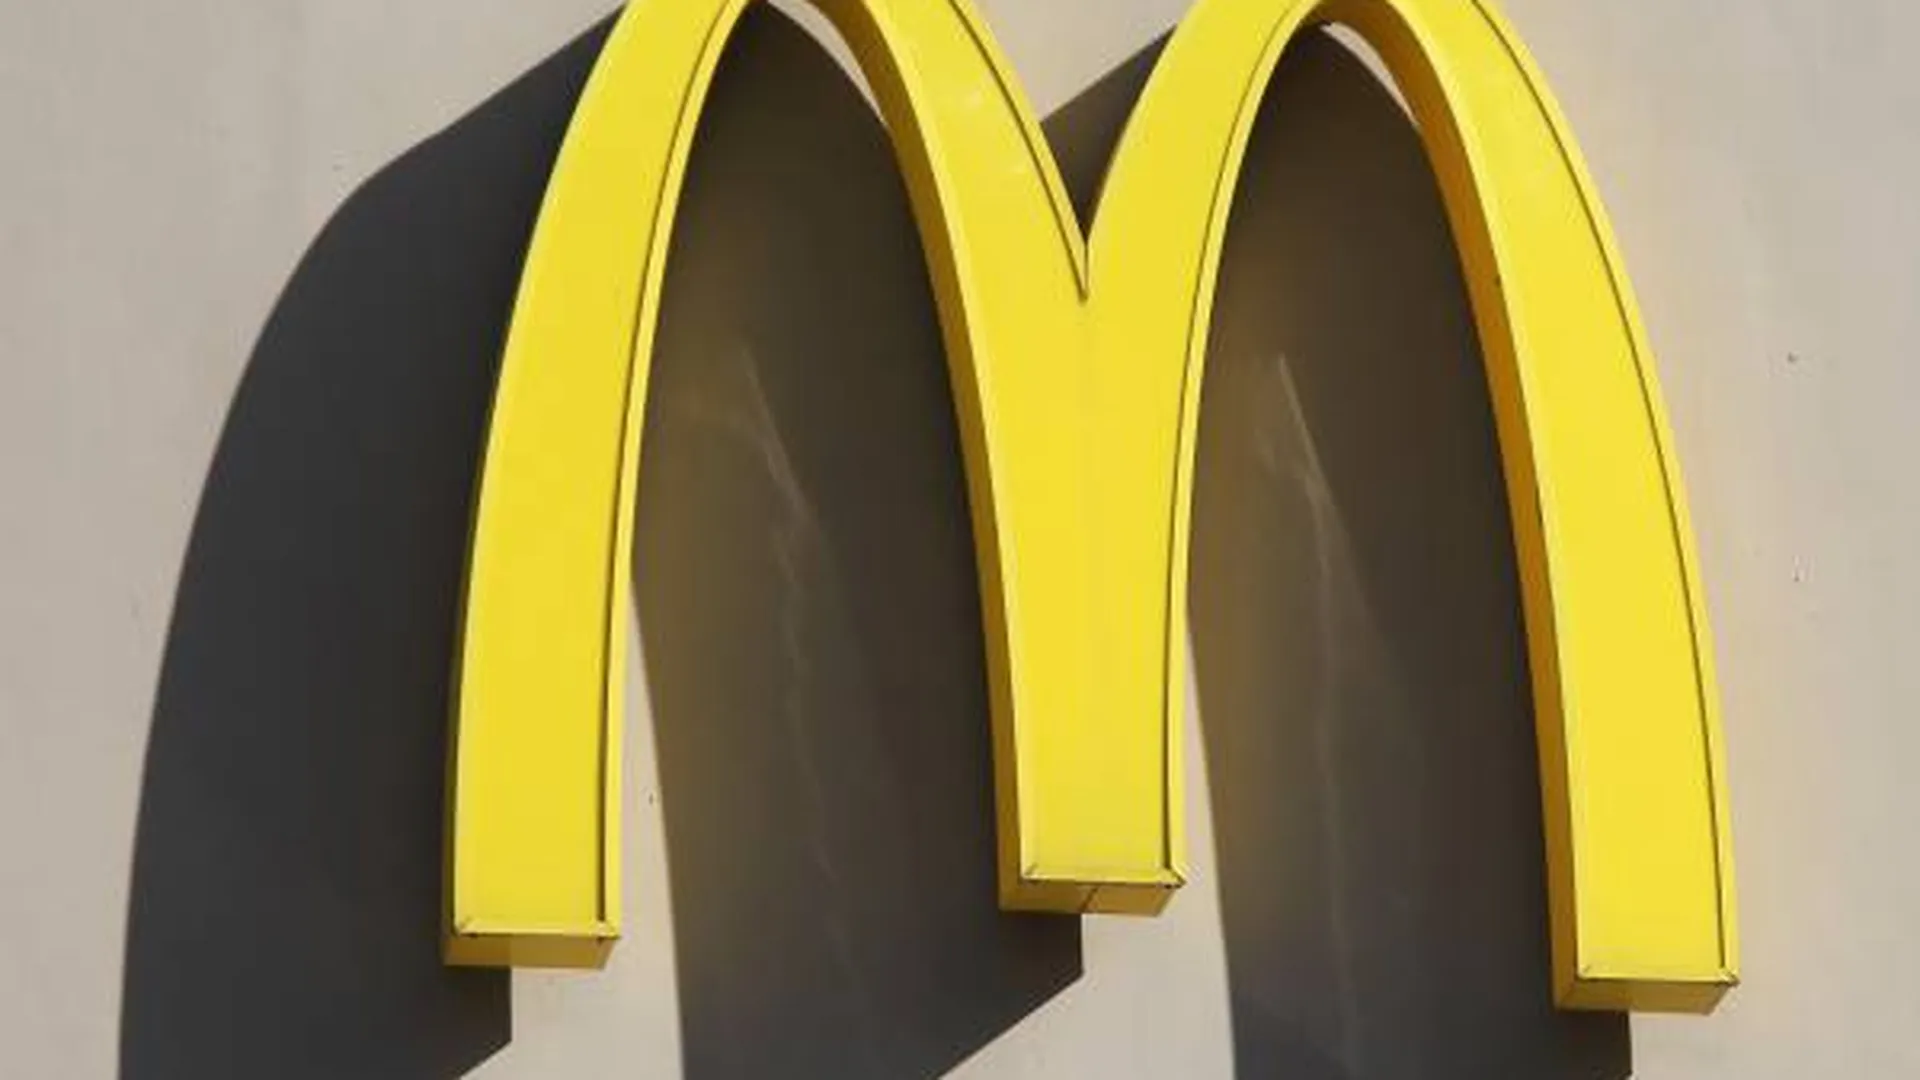 Обезьянья оспа пошла по миру, McDonald’s вернется под новым именем, НАТО расширяется. Неделя в фотогалерее